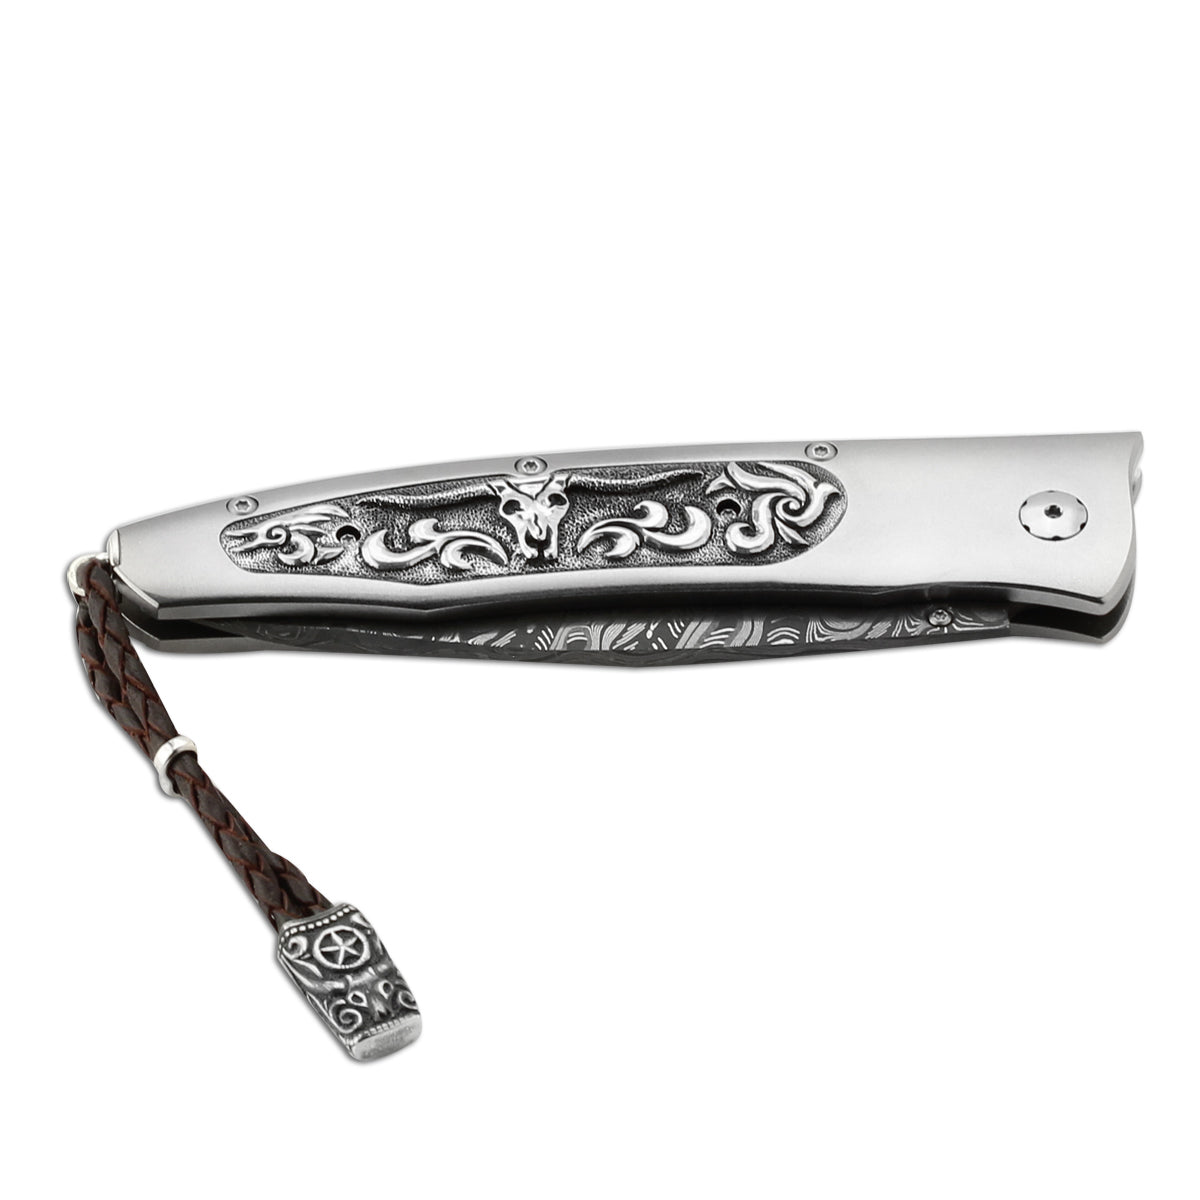 Gentac 'Longhorn' Knife 347805